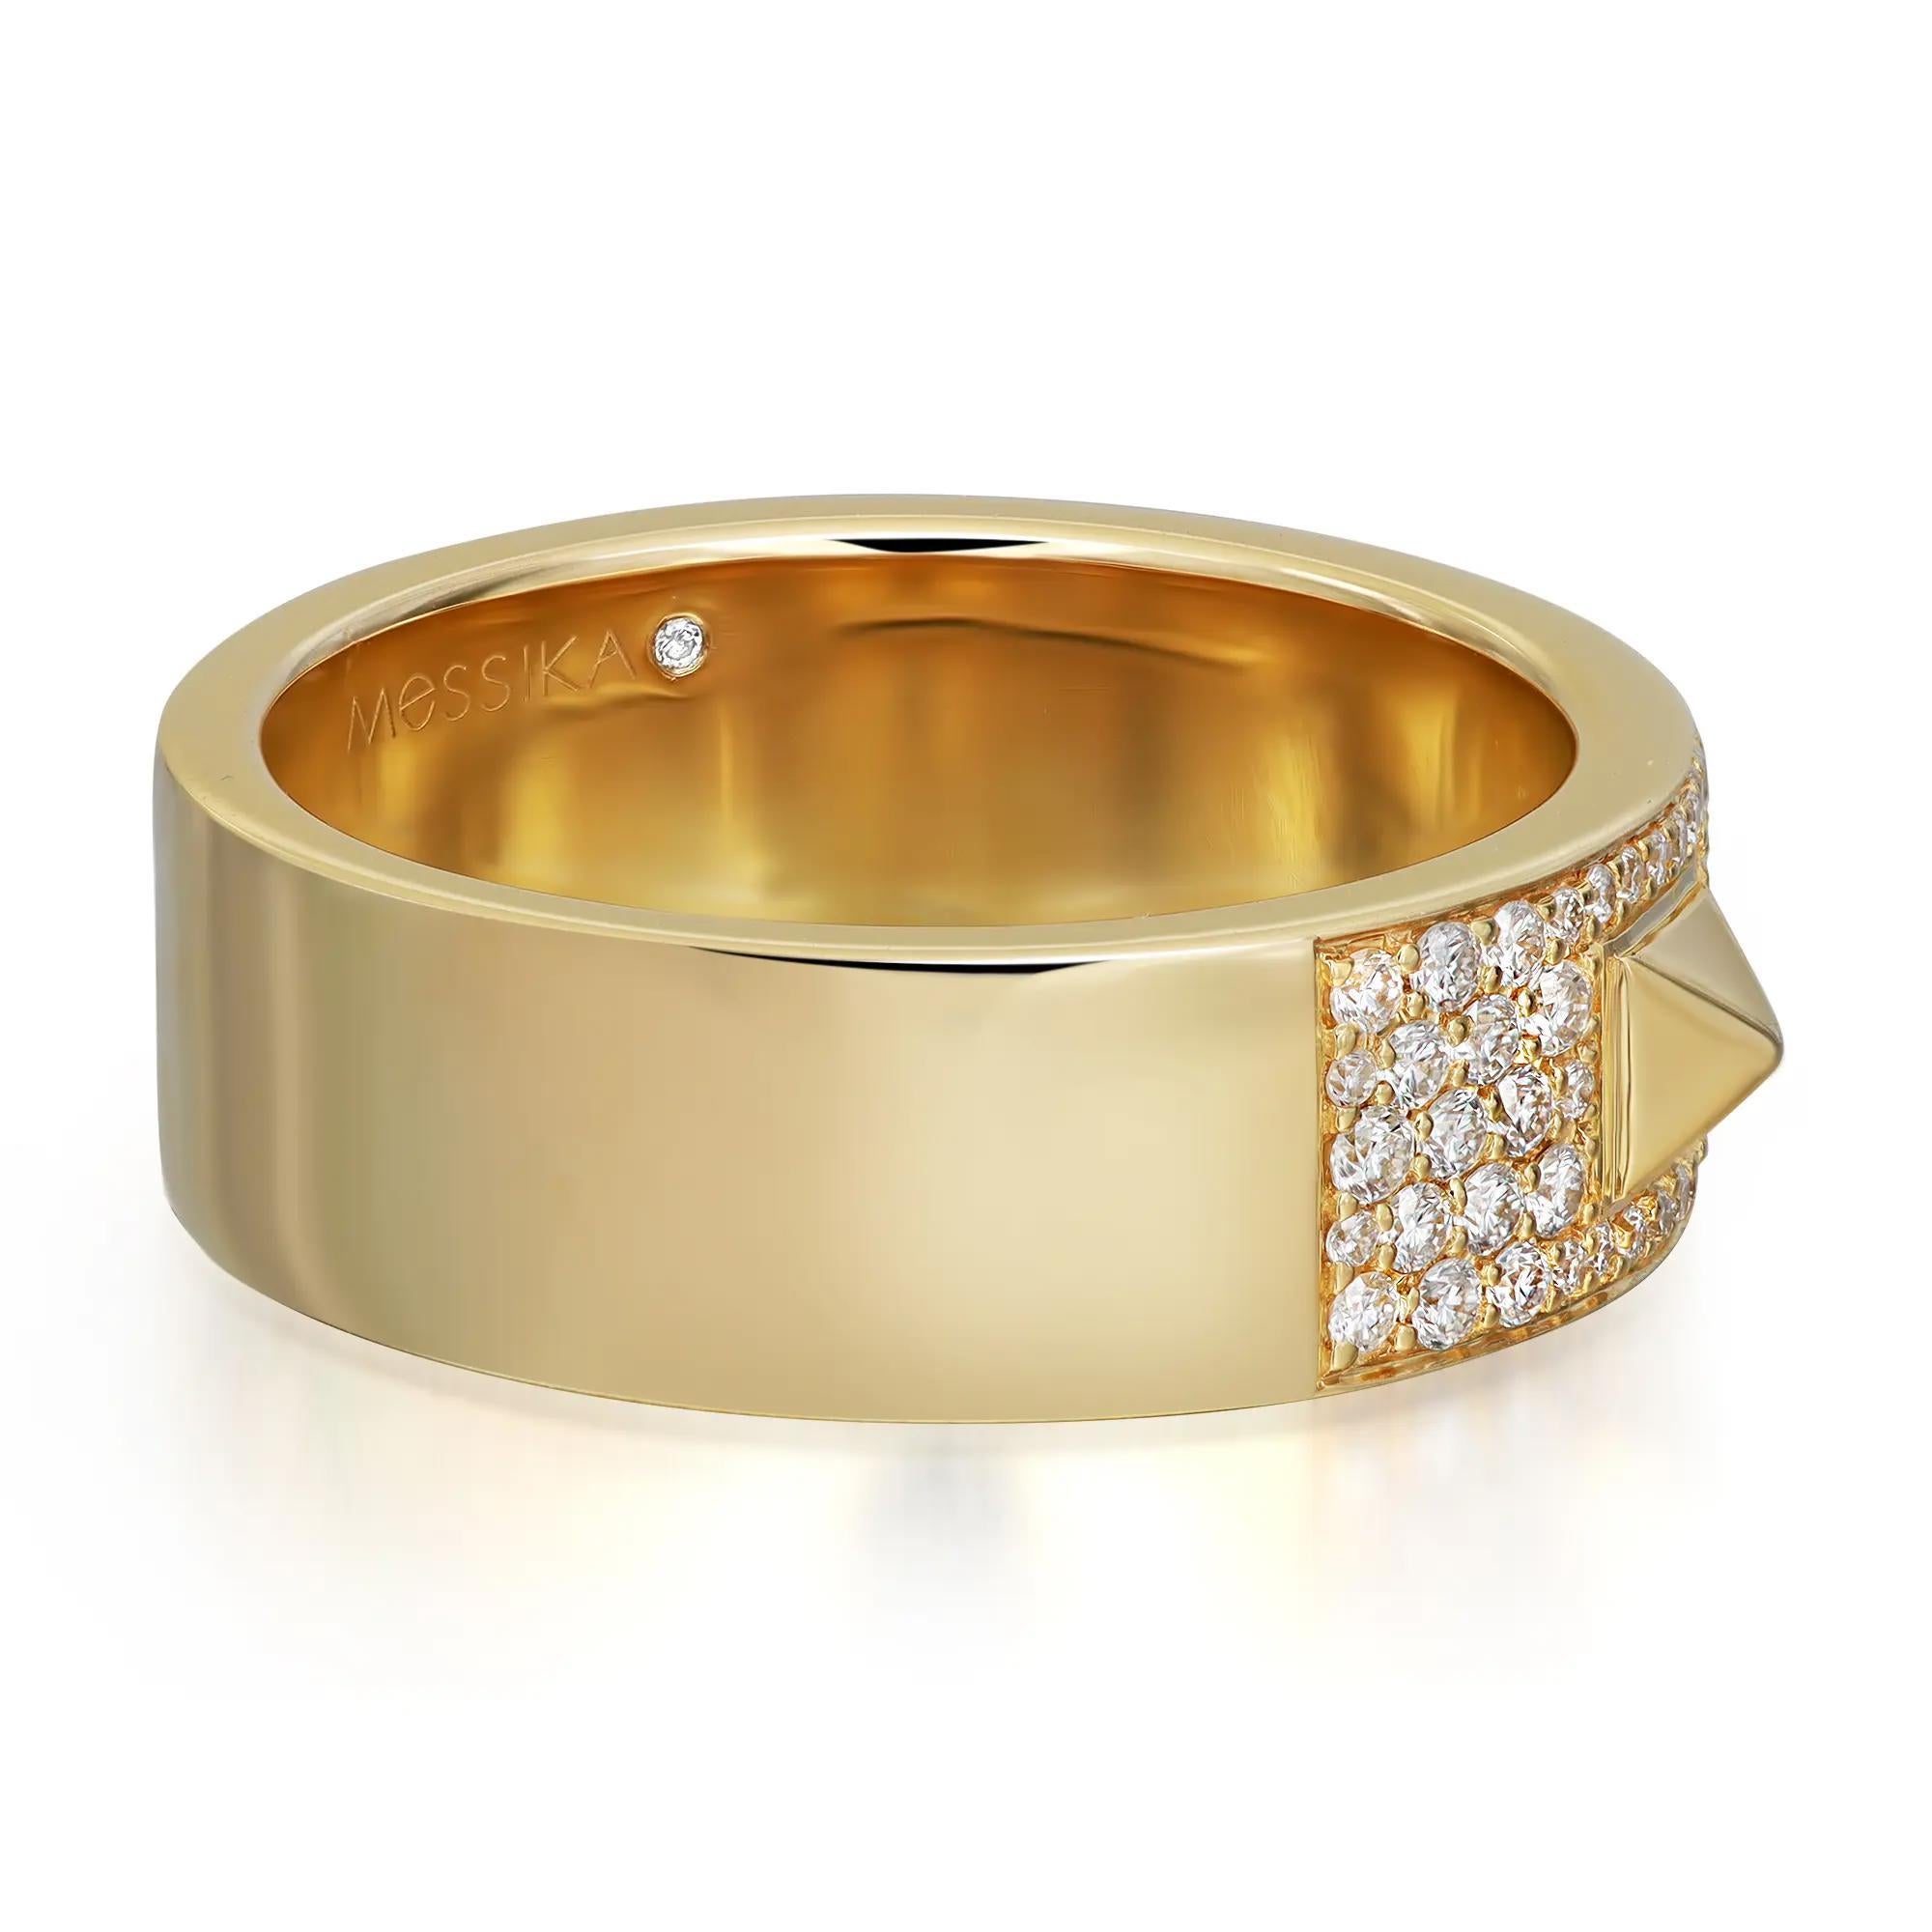 Kühn und zeitgemäß, der Messika Spiky Diamond Band Ring. Gefertigt aus glänzendem 18-karätigem Gelbgold. Er ist mit runden Diamanten im Brillantschliff besetzt, die in der Mitte des Bandes mit drei Zacken versehen sind und ihm einen einzigartigen